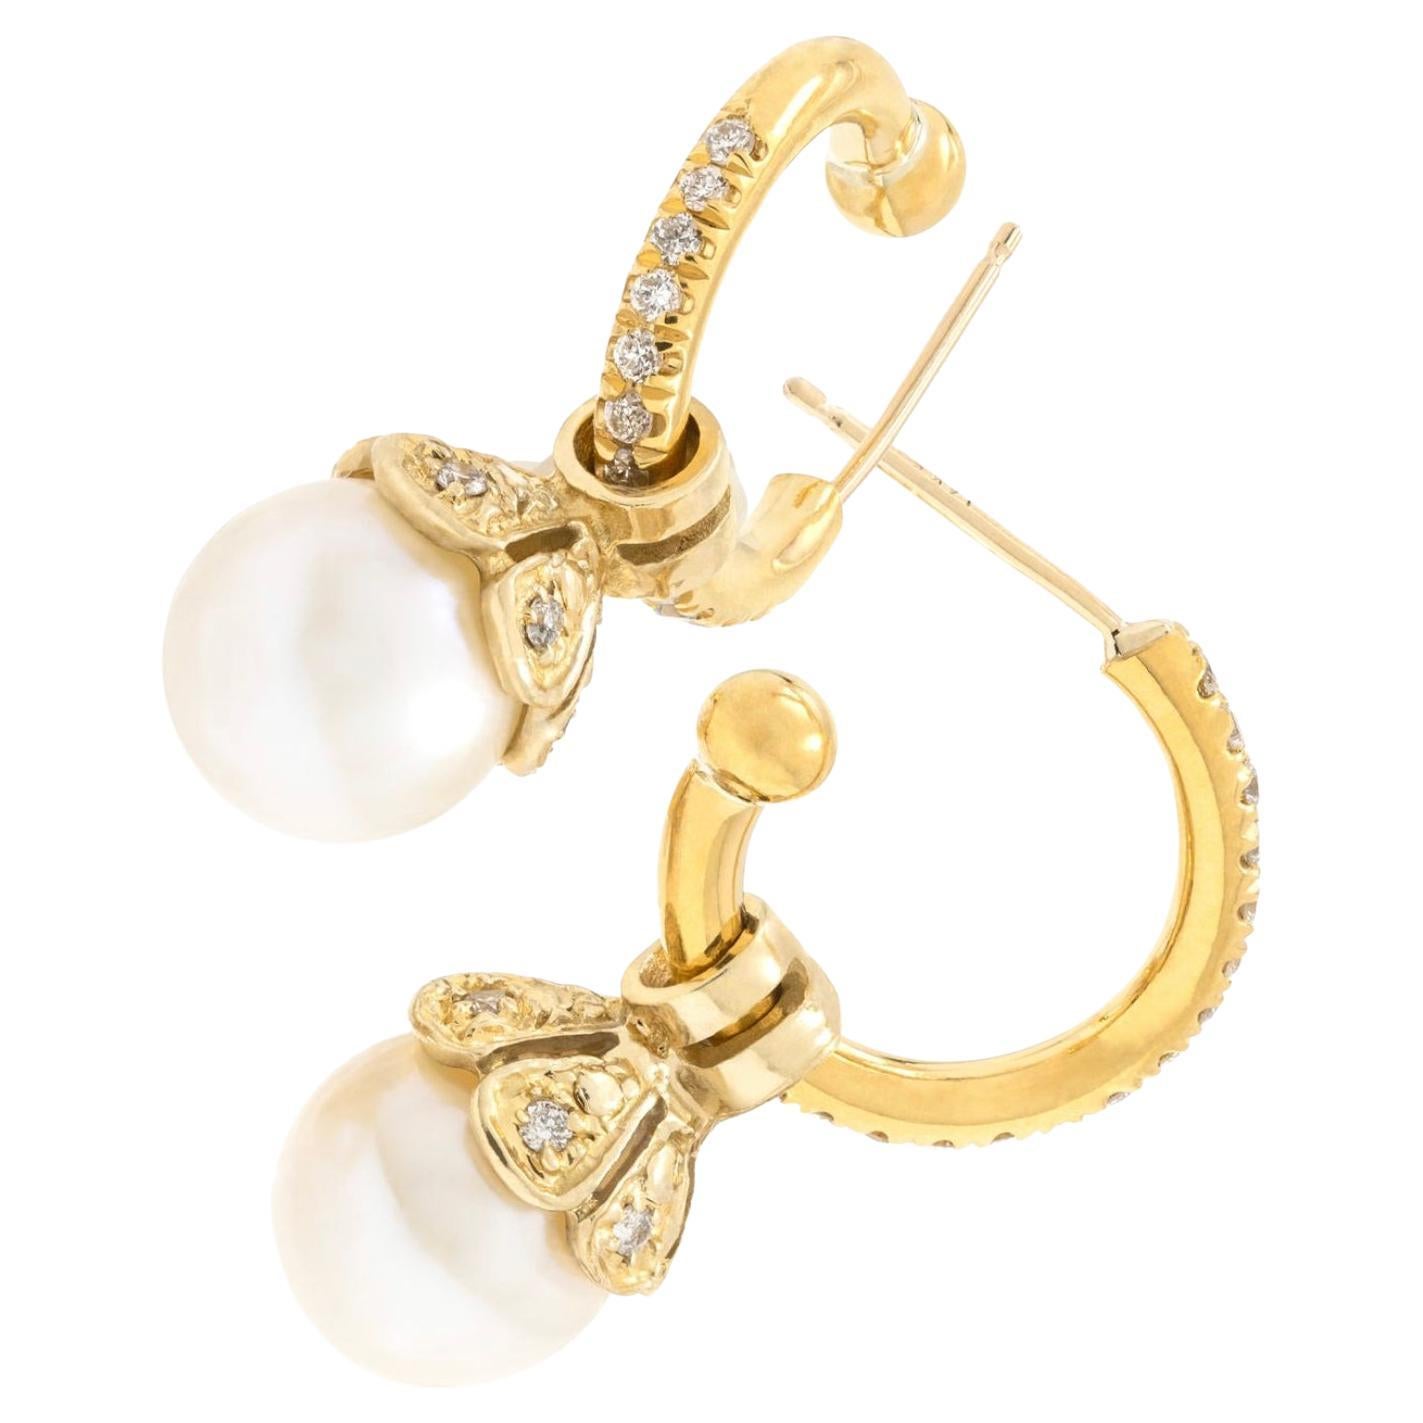 Paris & Lily, boucles d'oreilles créoles en or 22 carats et diamants avec pendentifs amovibles